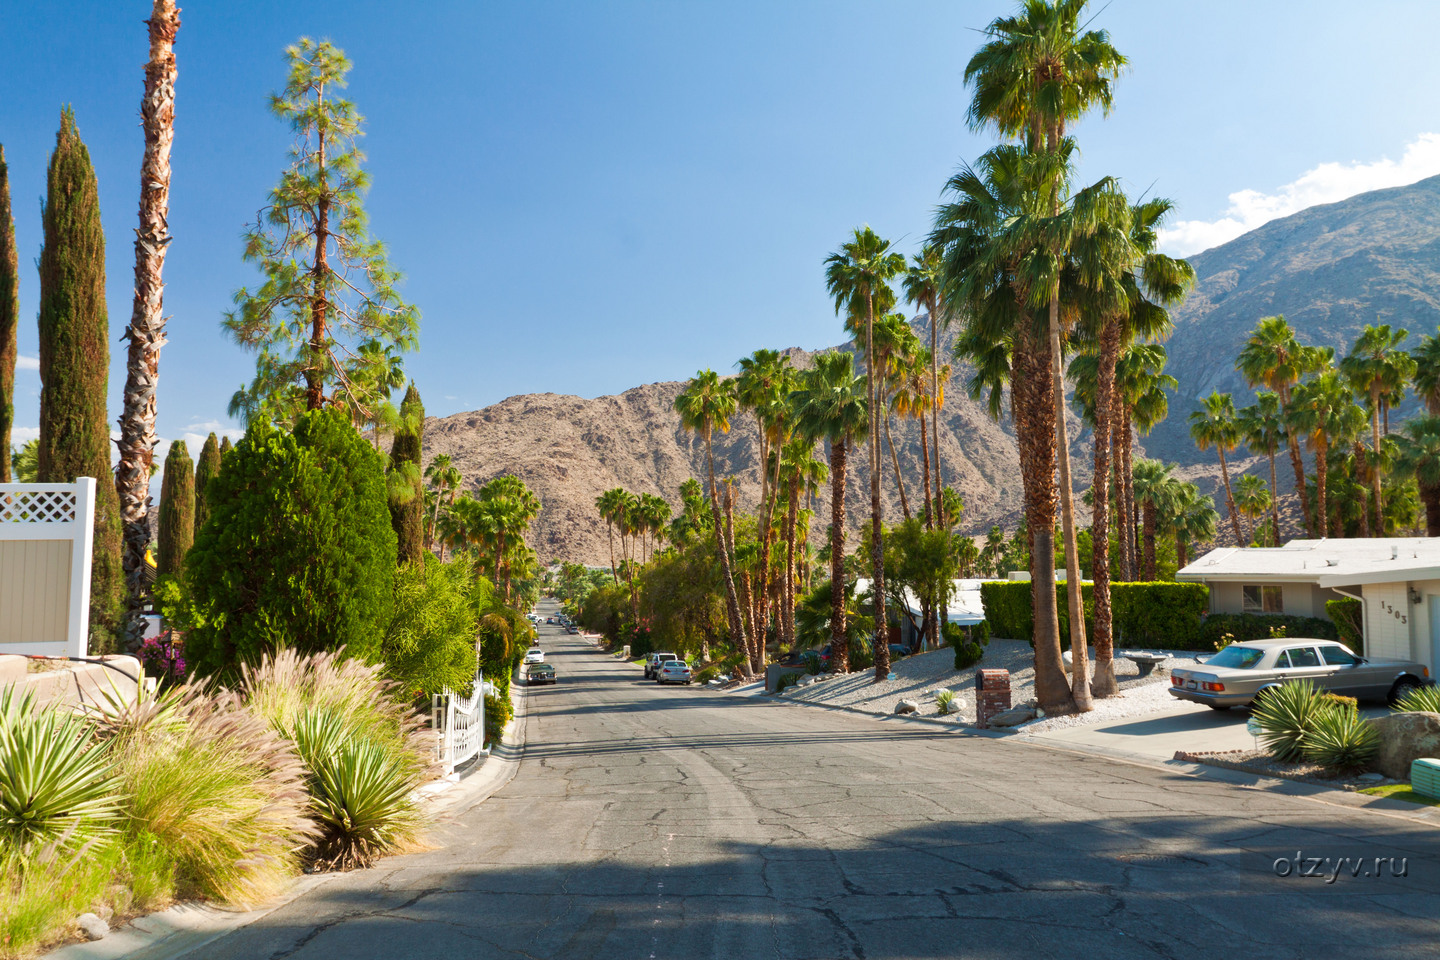 Las Vegas - Palm Springs - Santa Barbara.